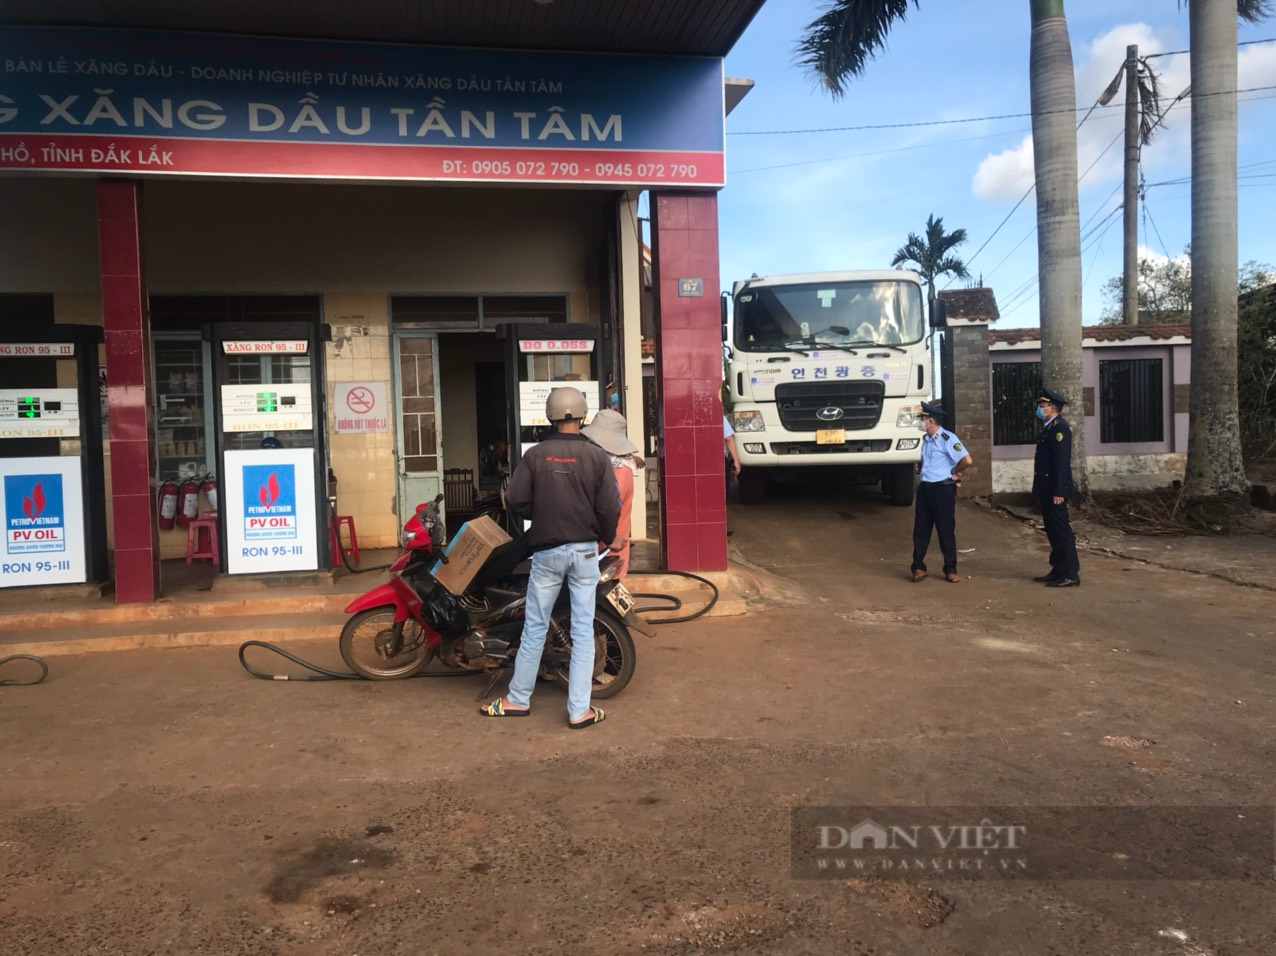 Đắk Lắk: Cục Quản lý thị trường vào cuộc phát hiện nhiều cửa hàng xăng dầu đóng cửa - Ảnh 2.